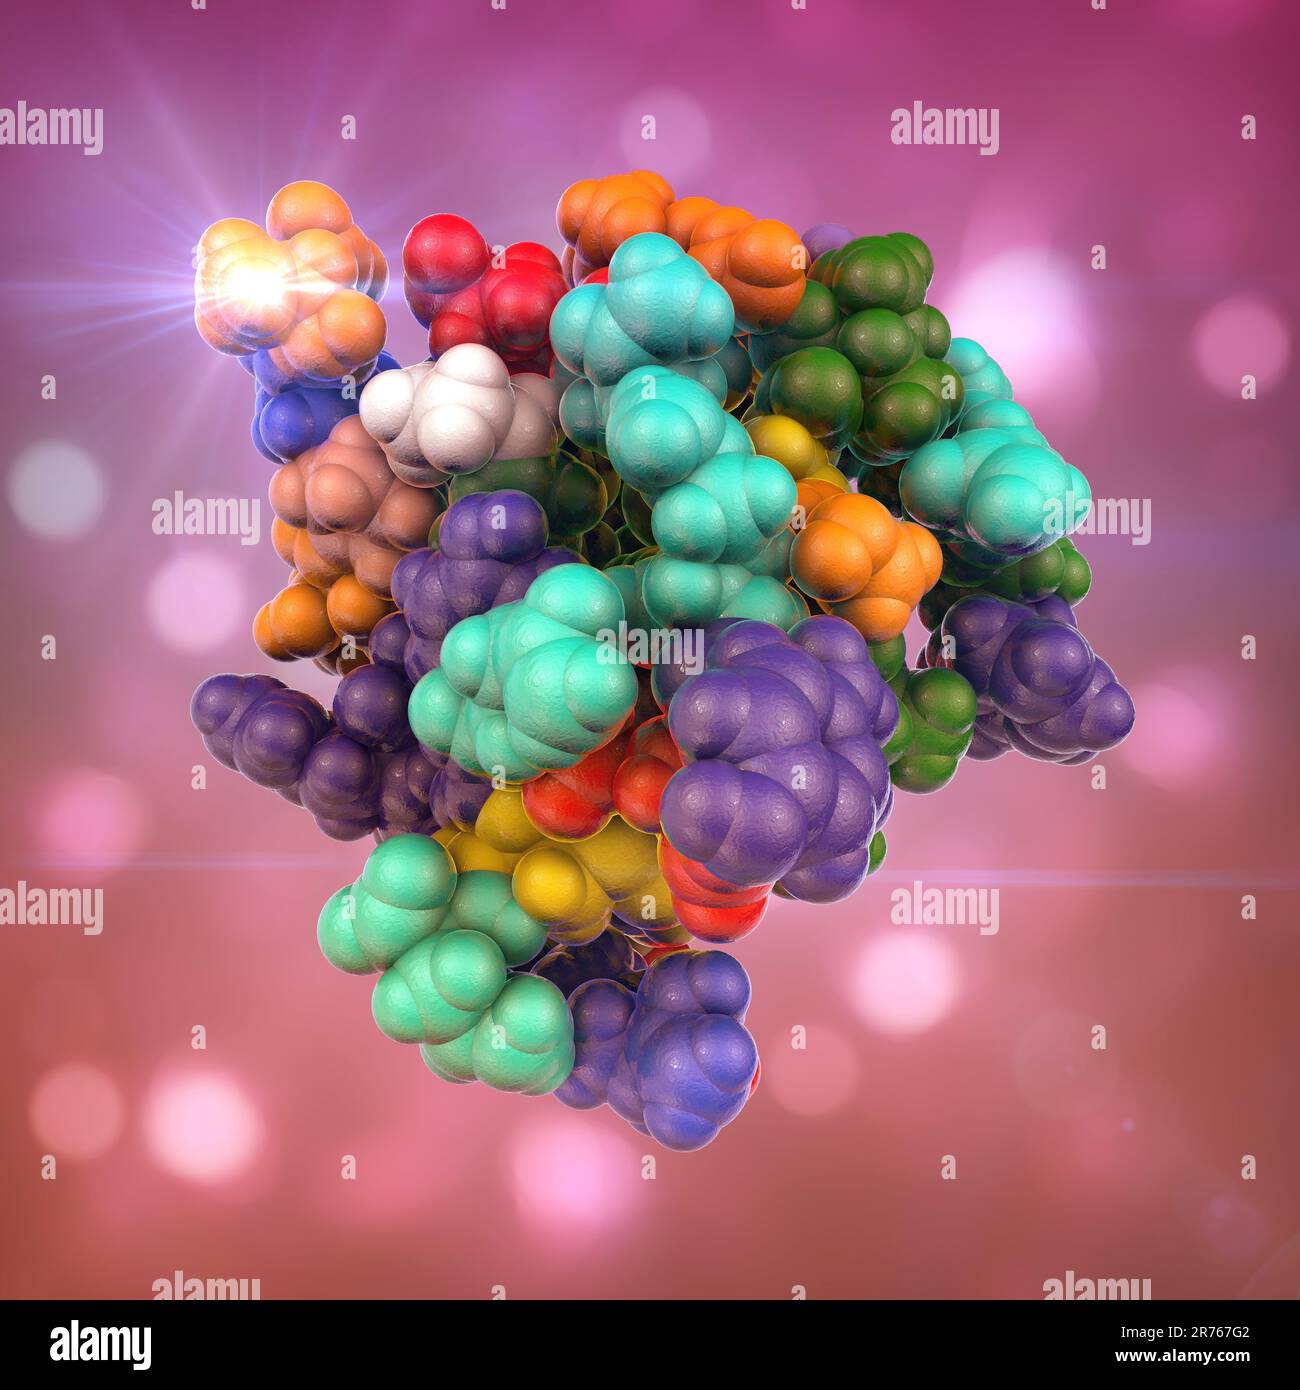 Molecola di insulina. Modello di computer che mostra la struttura di una molecola di ormone insulina. L'insulina svolge un ruolo importante nel sangue regolamento sullo zucchero Foto Stock